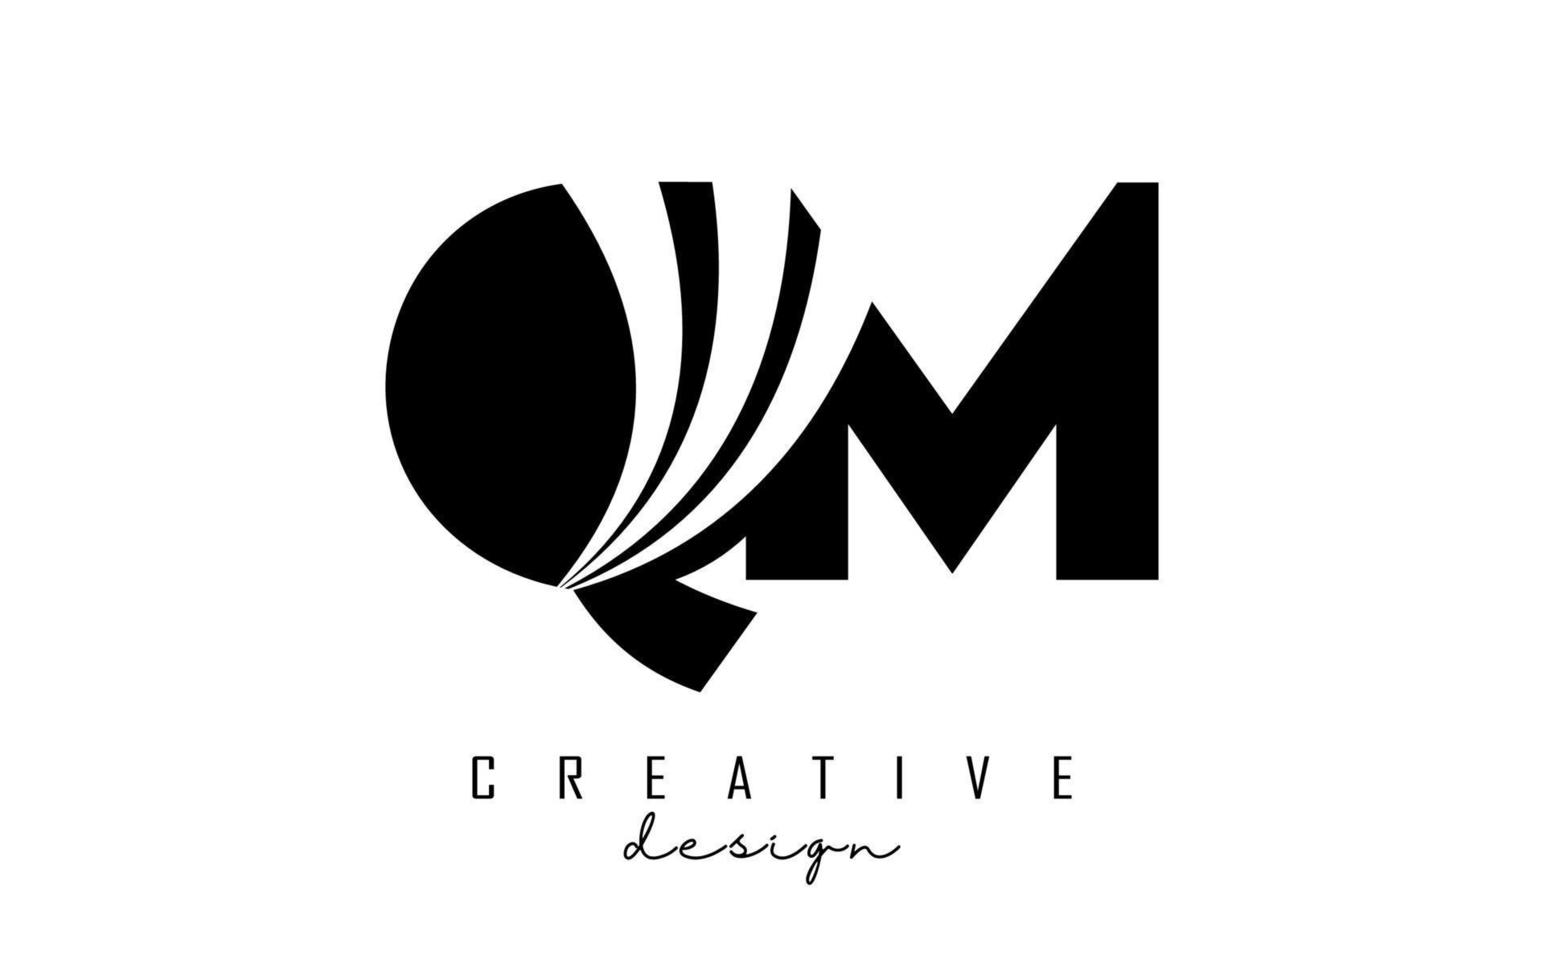 letras pretas criativas qm qm logotipo com linhas principais e design de conceito de estrada. letras com desenho geométrico. vetor